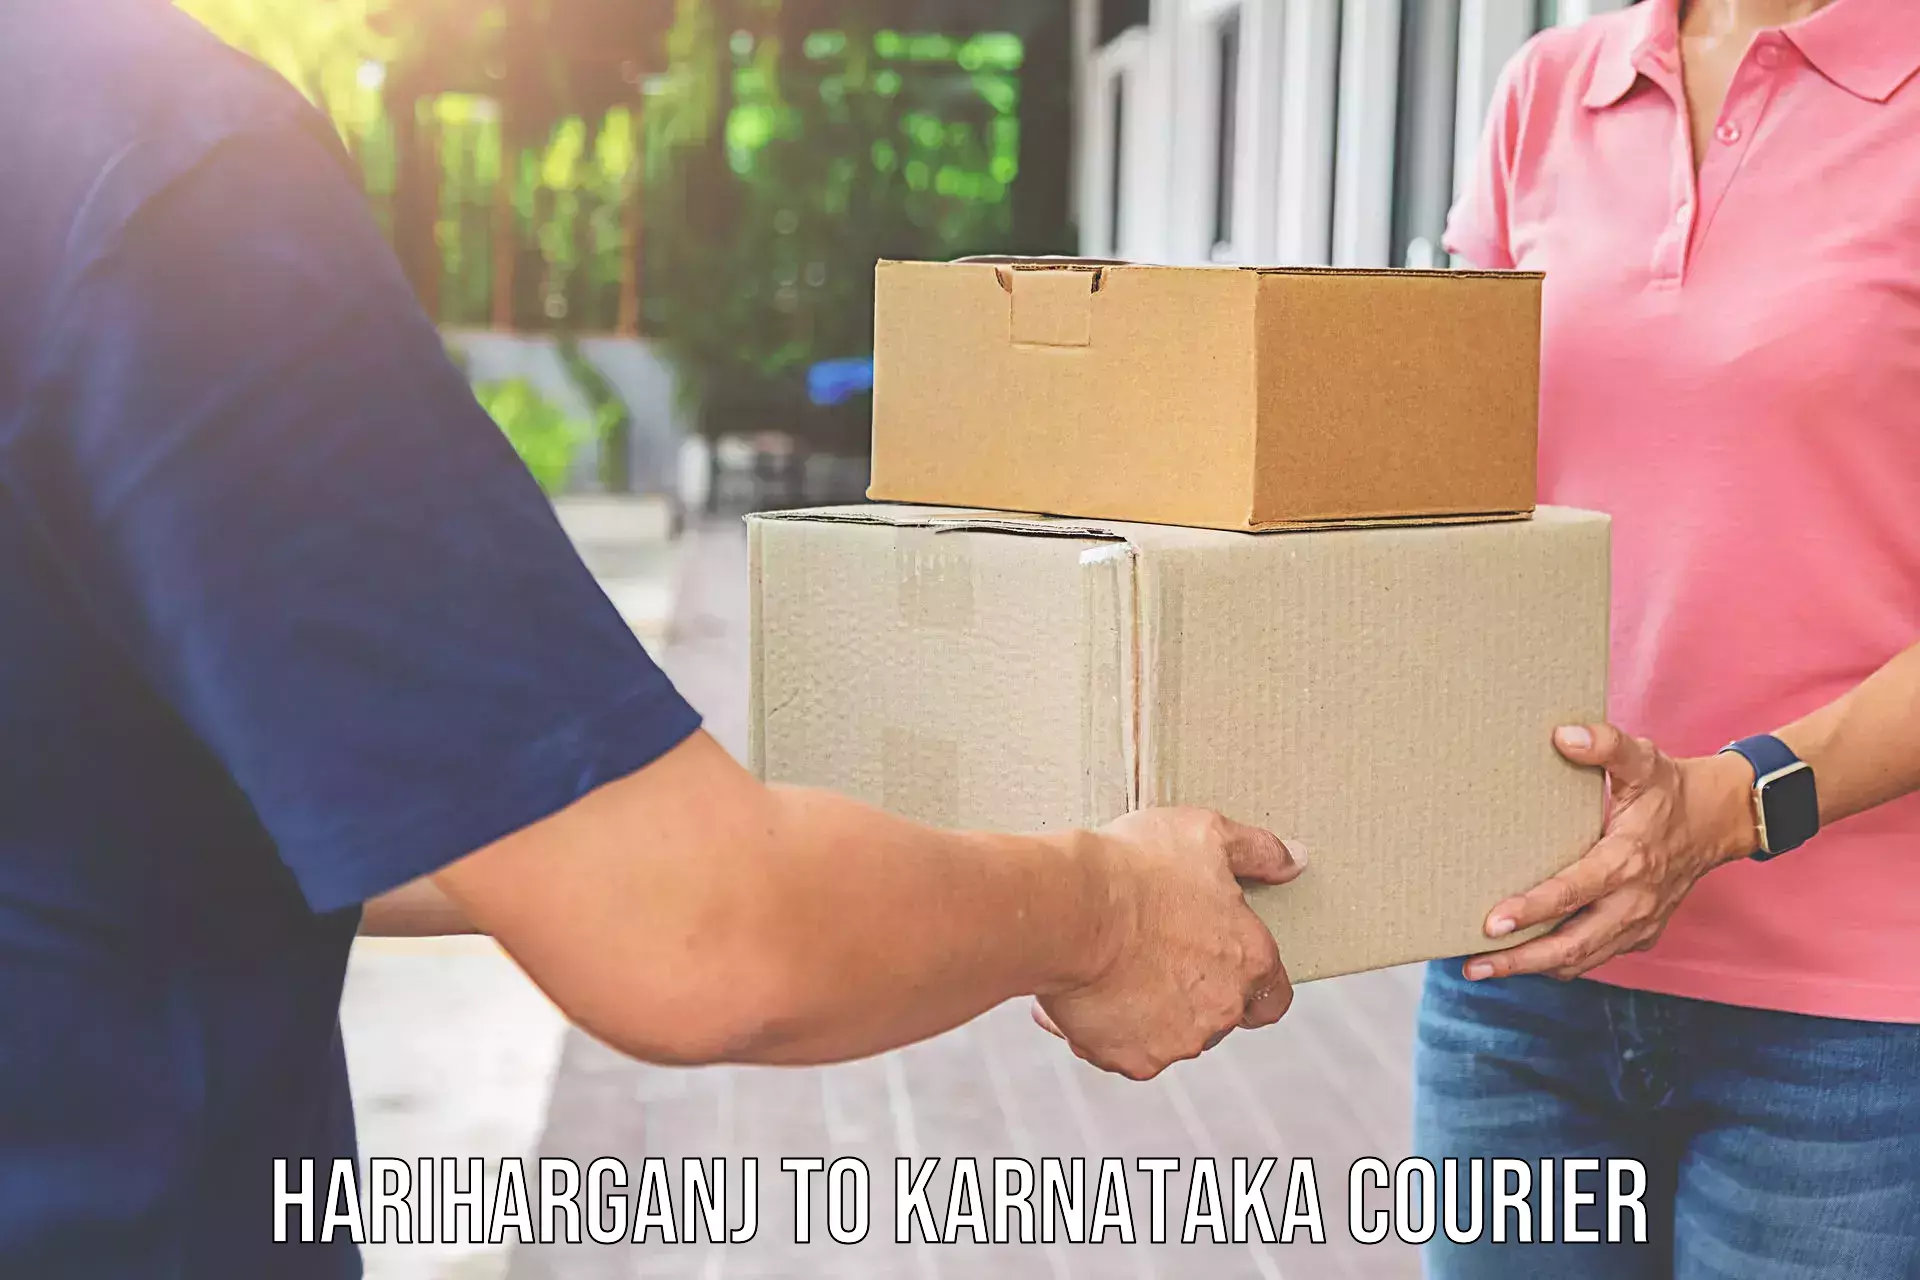 Reliable furniture transport Hariharganj to Madikeri